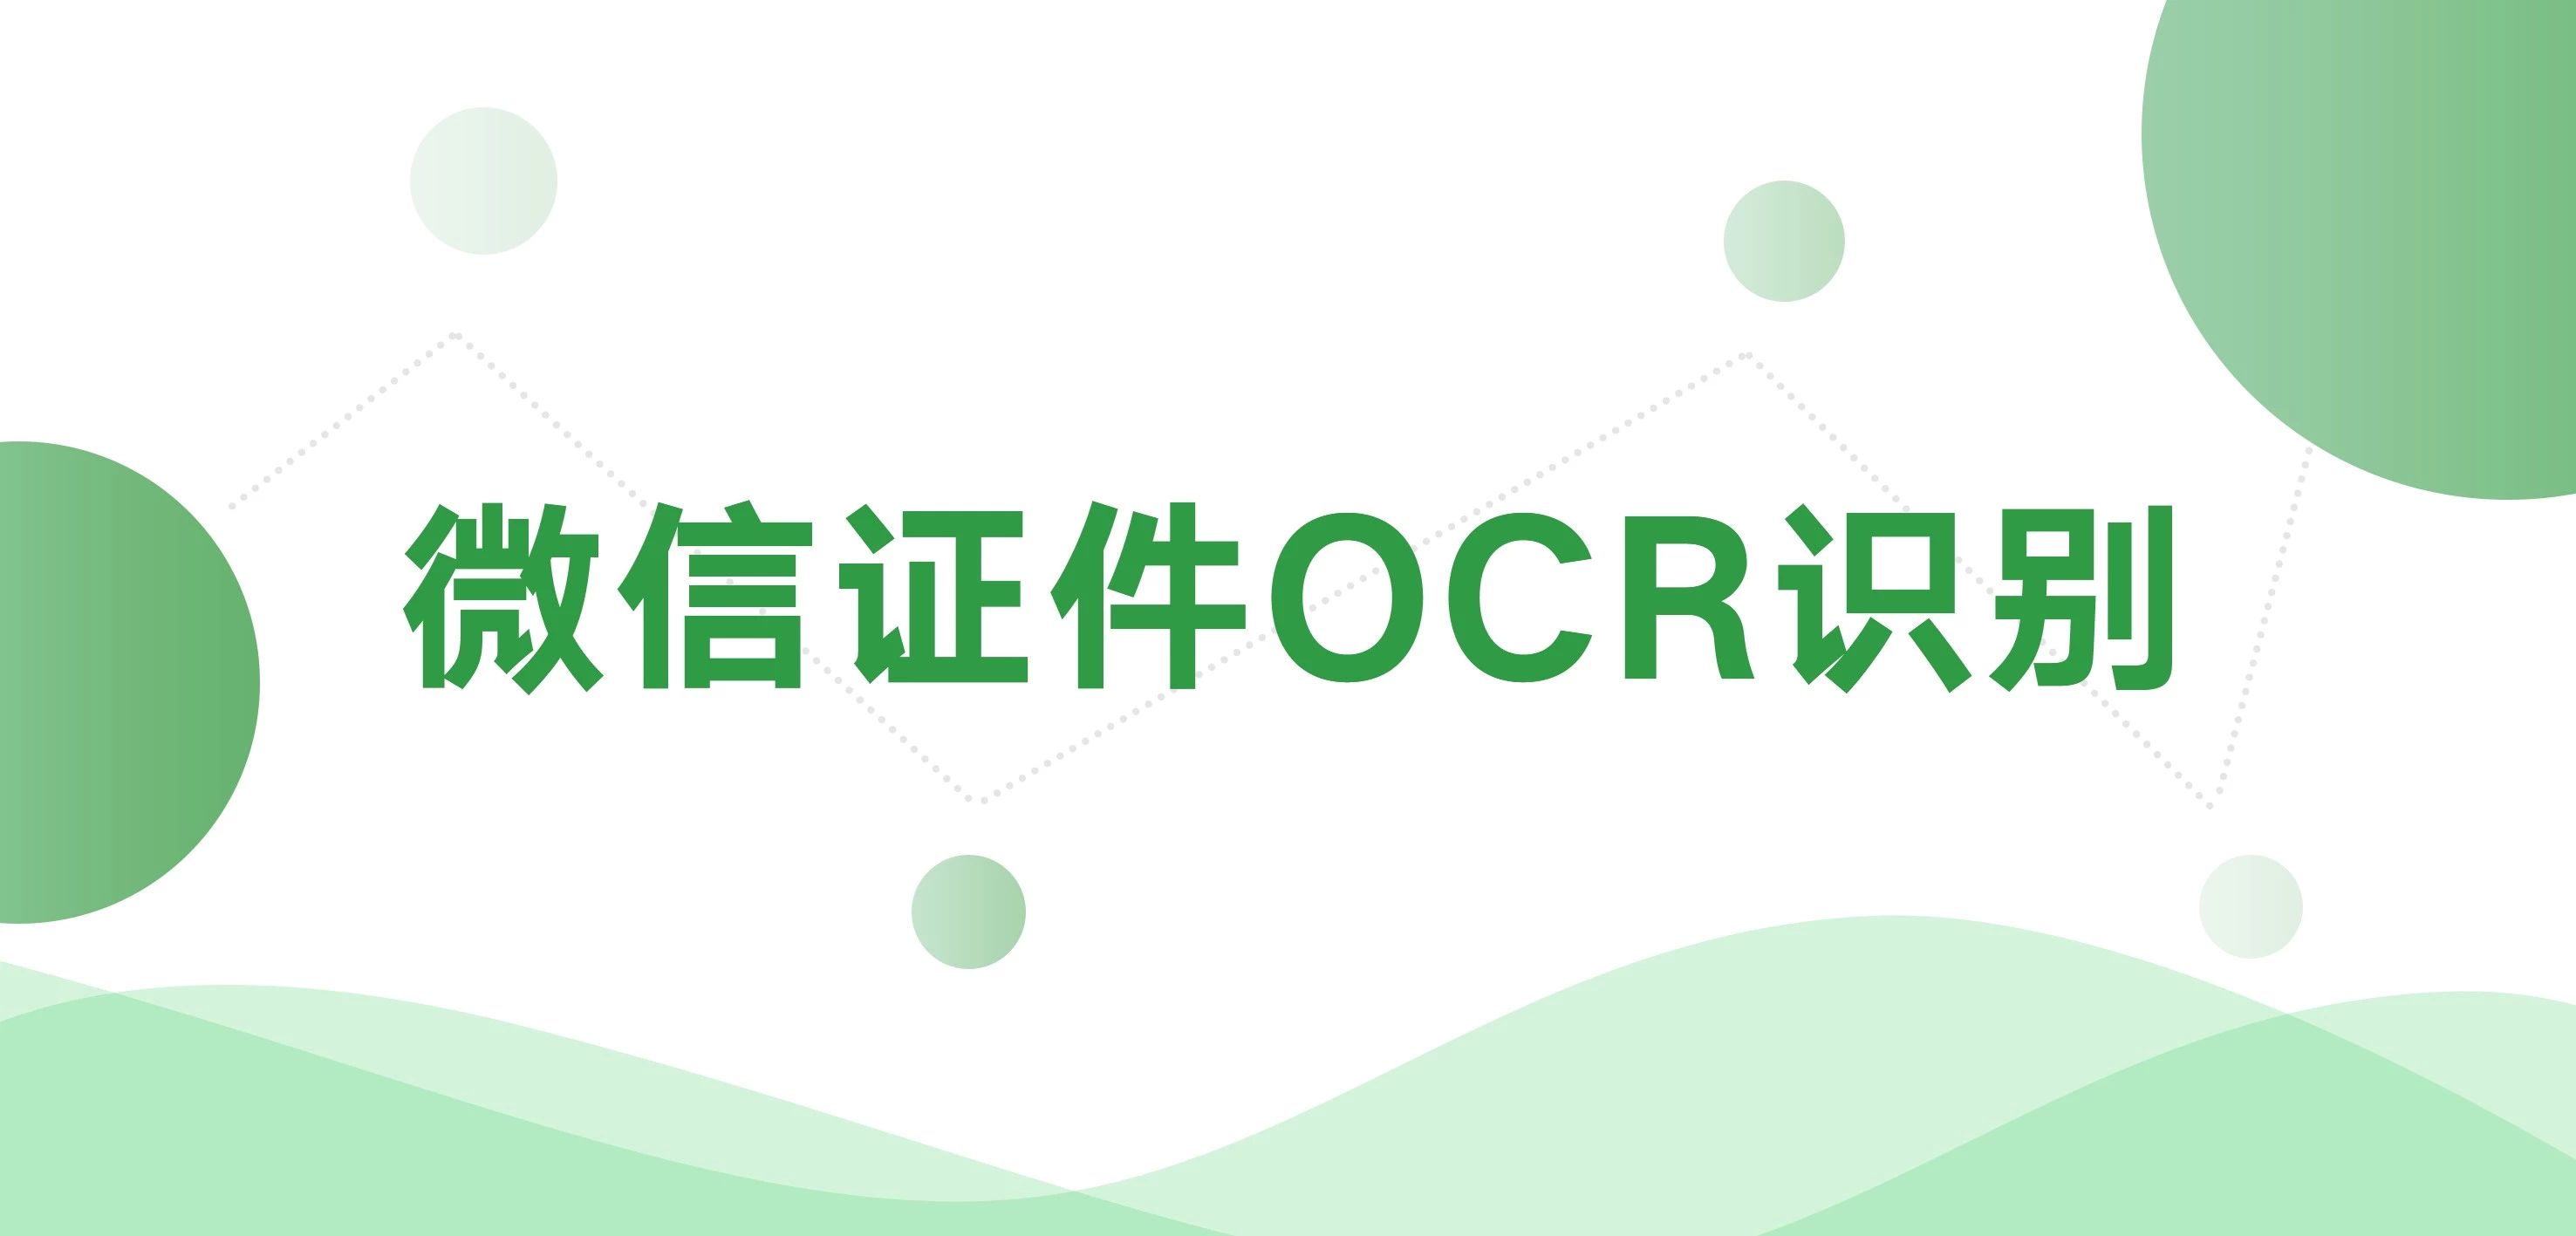 OCR插件